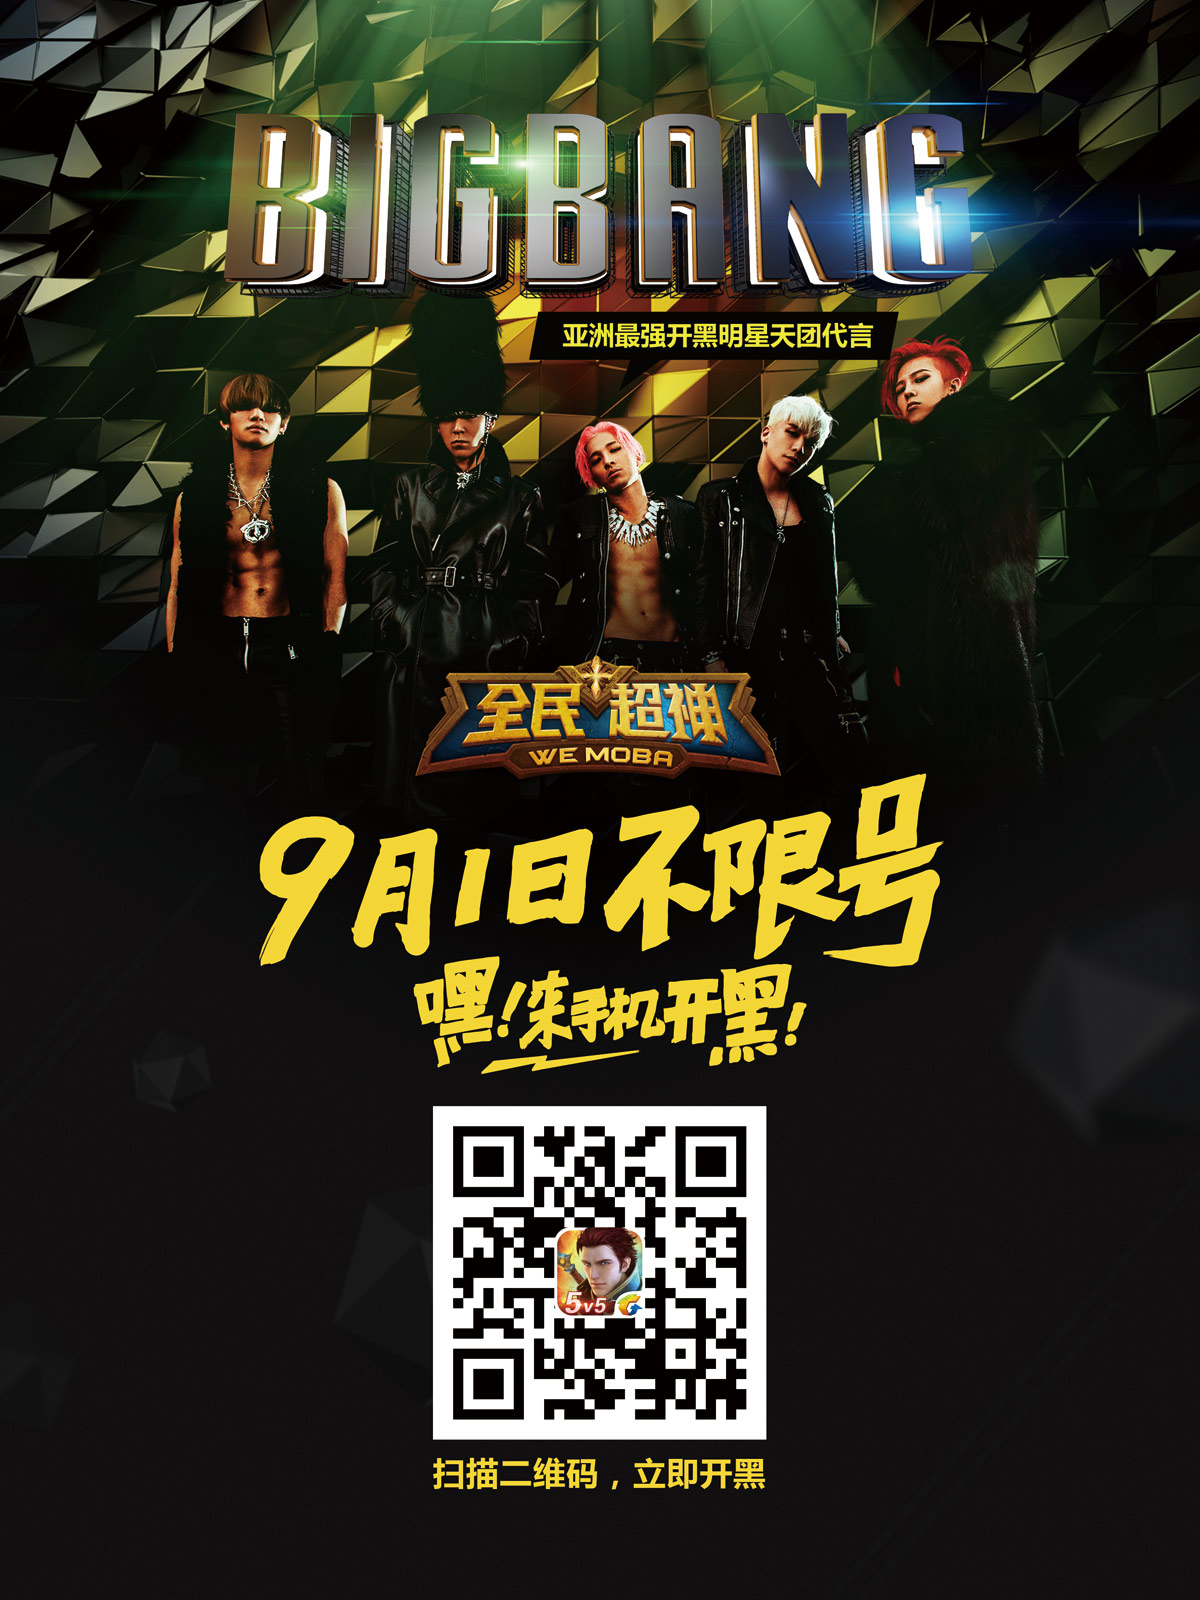 全民超神开启不限号 和BIGBANG来手机开黑[多图]图片1